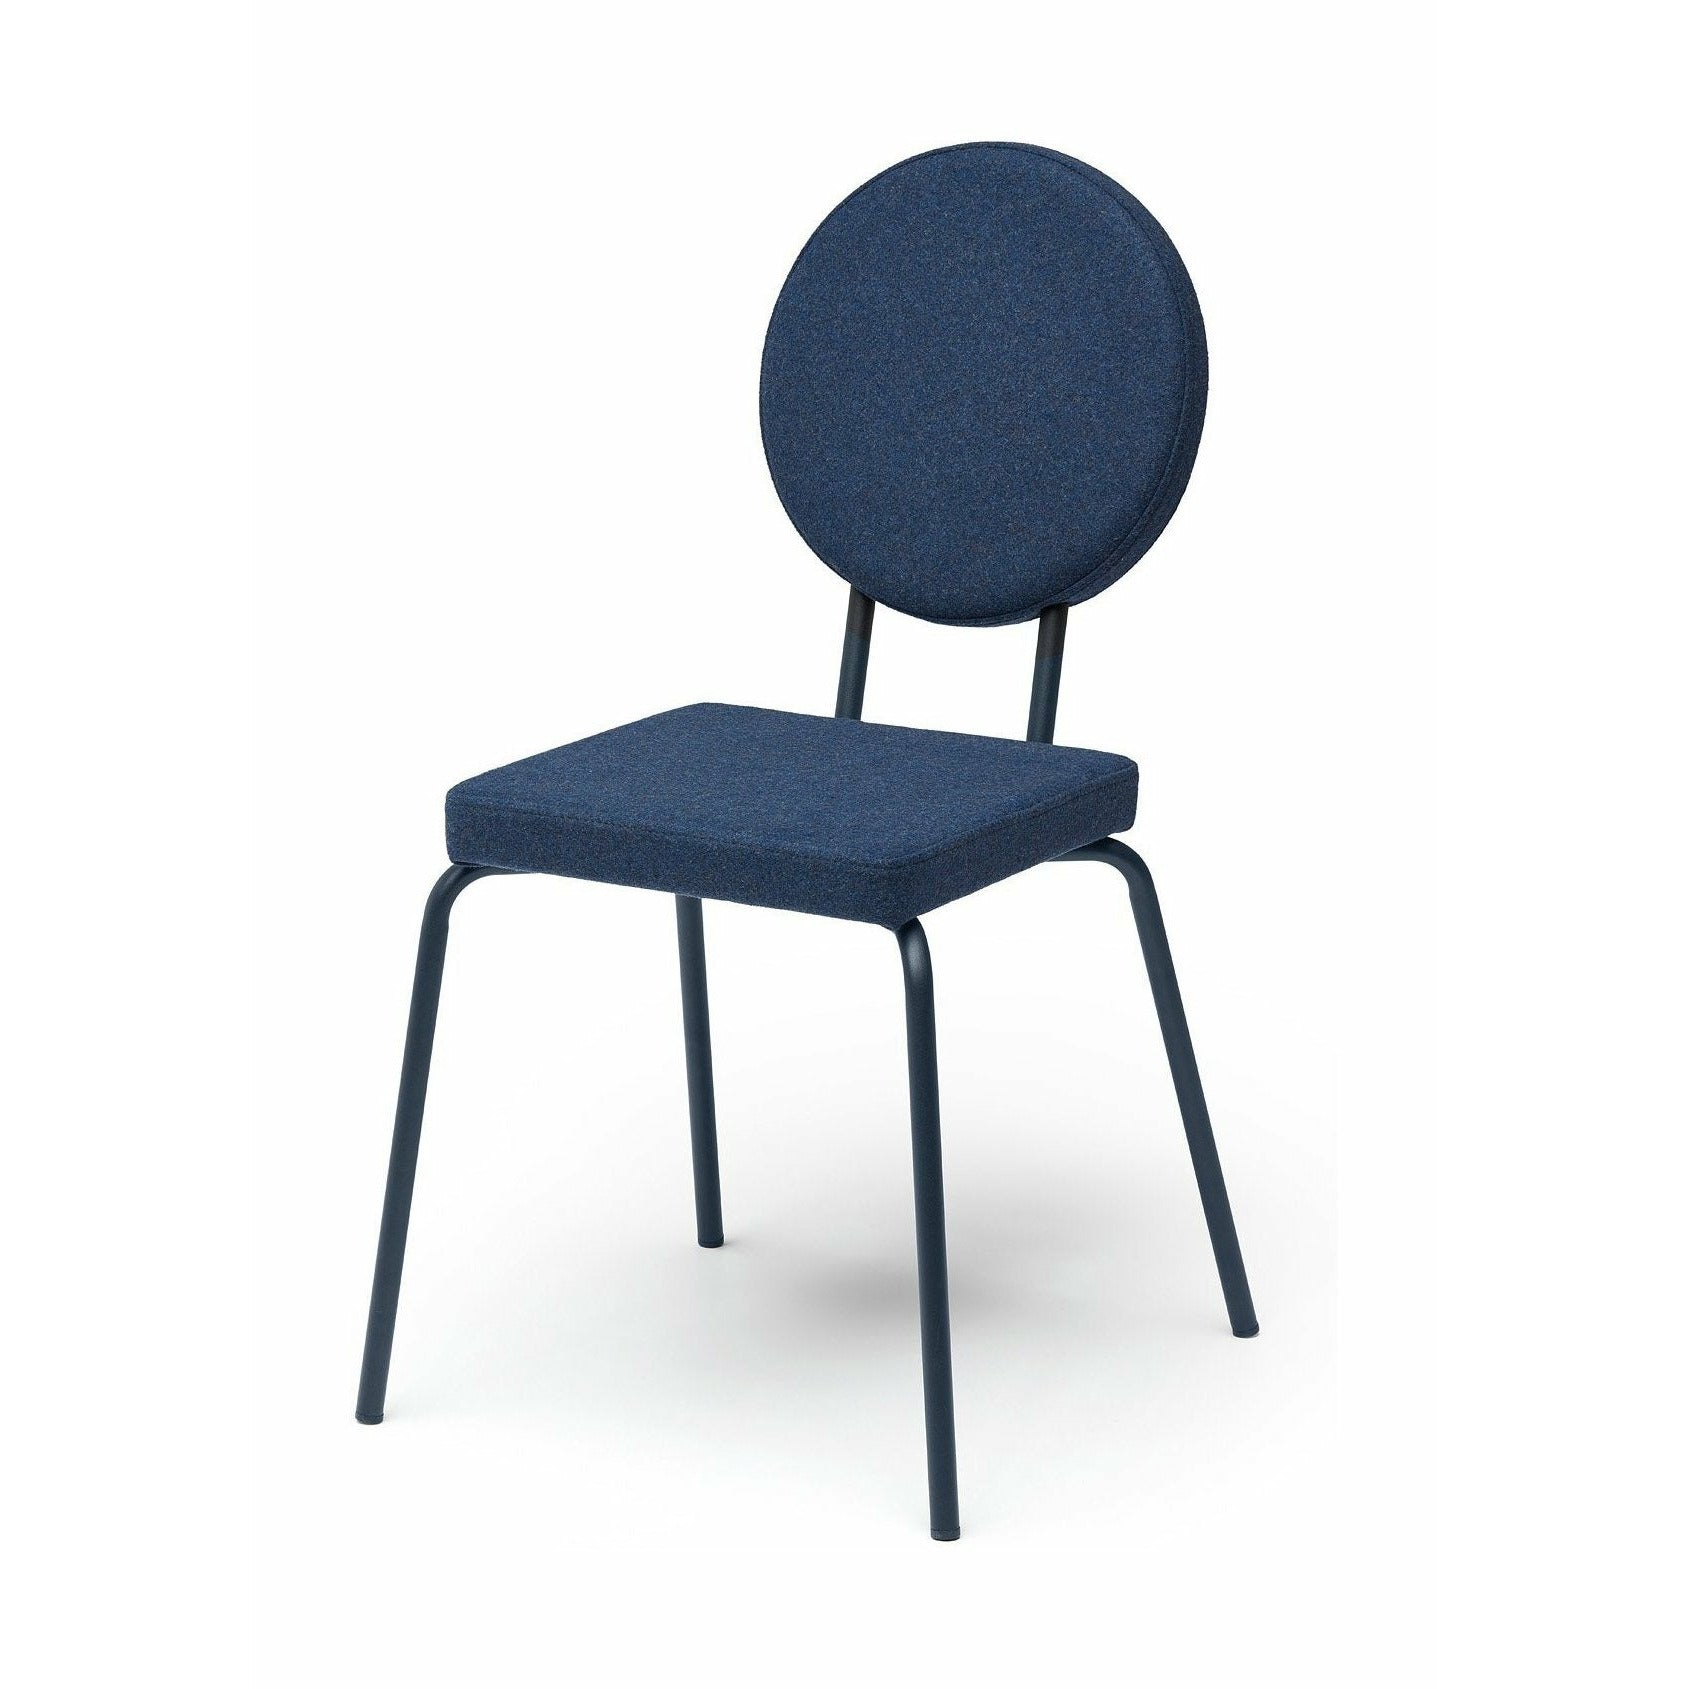 Puik Option Stol sæde firkant / ryglæn runde, mørkeblå